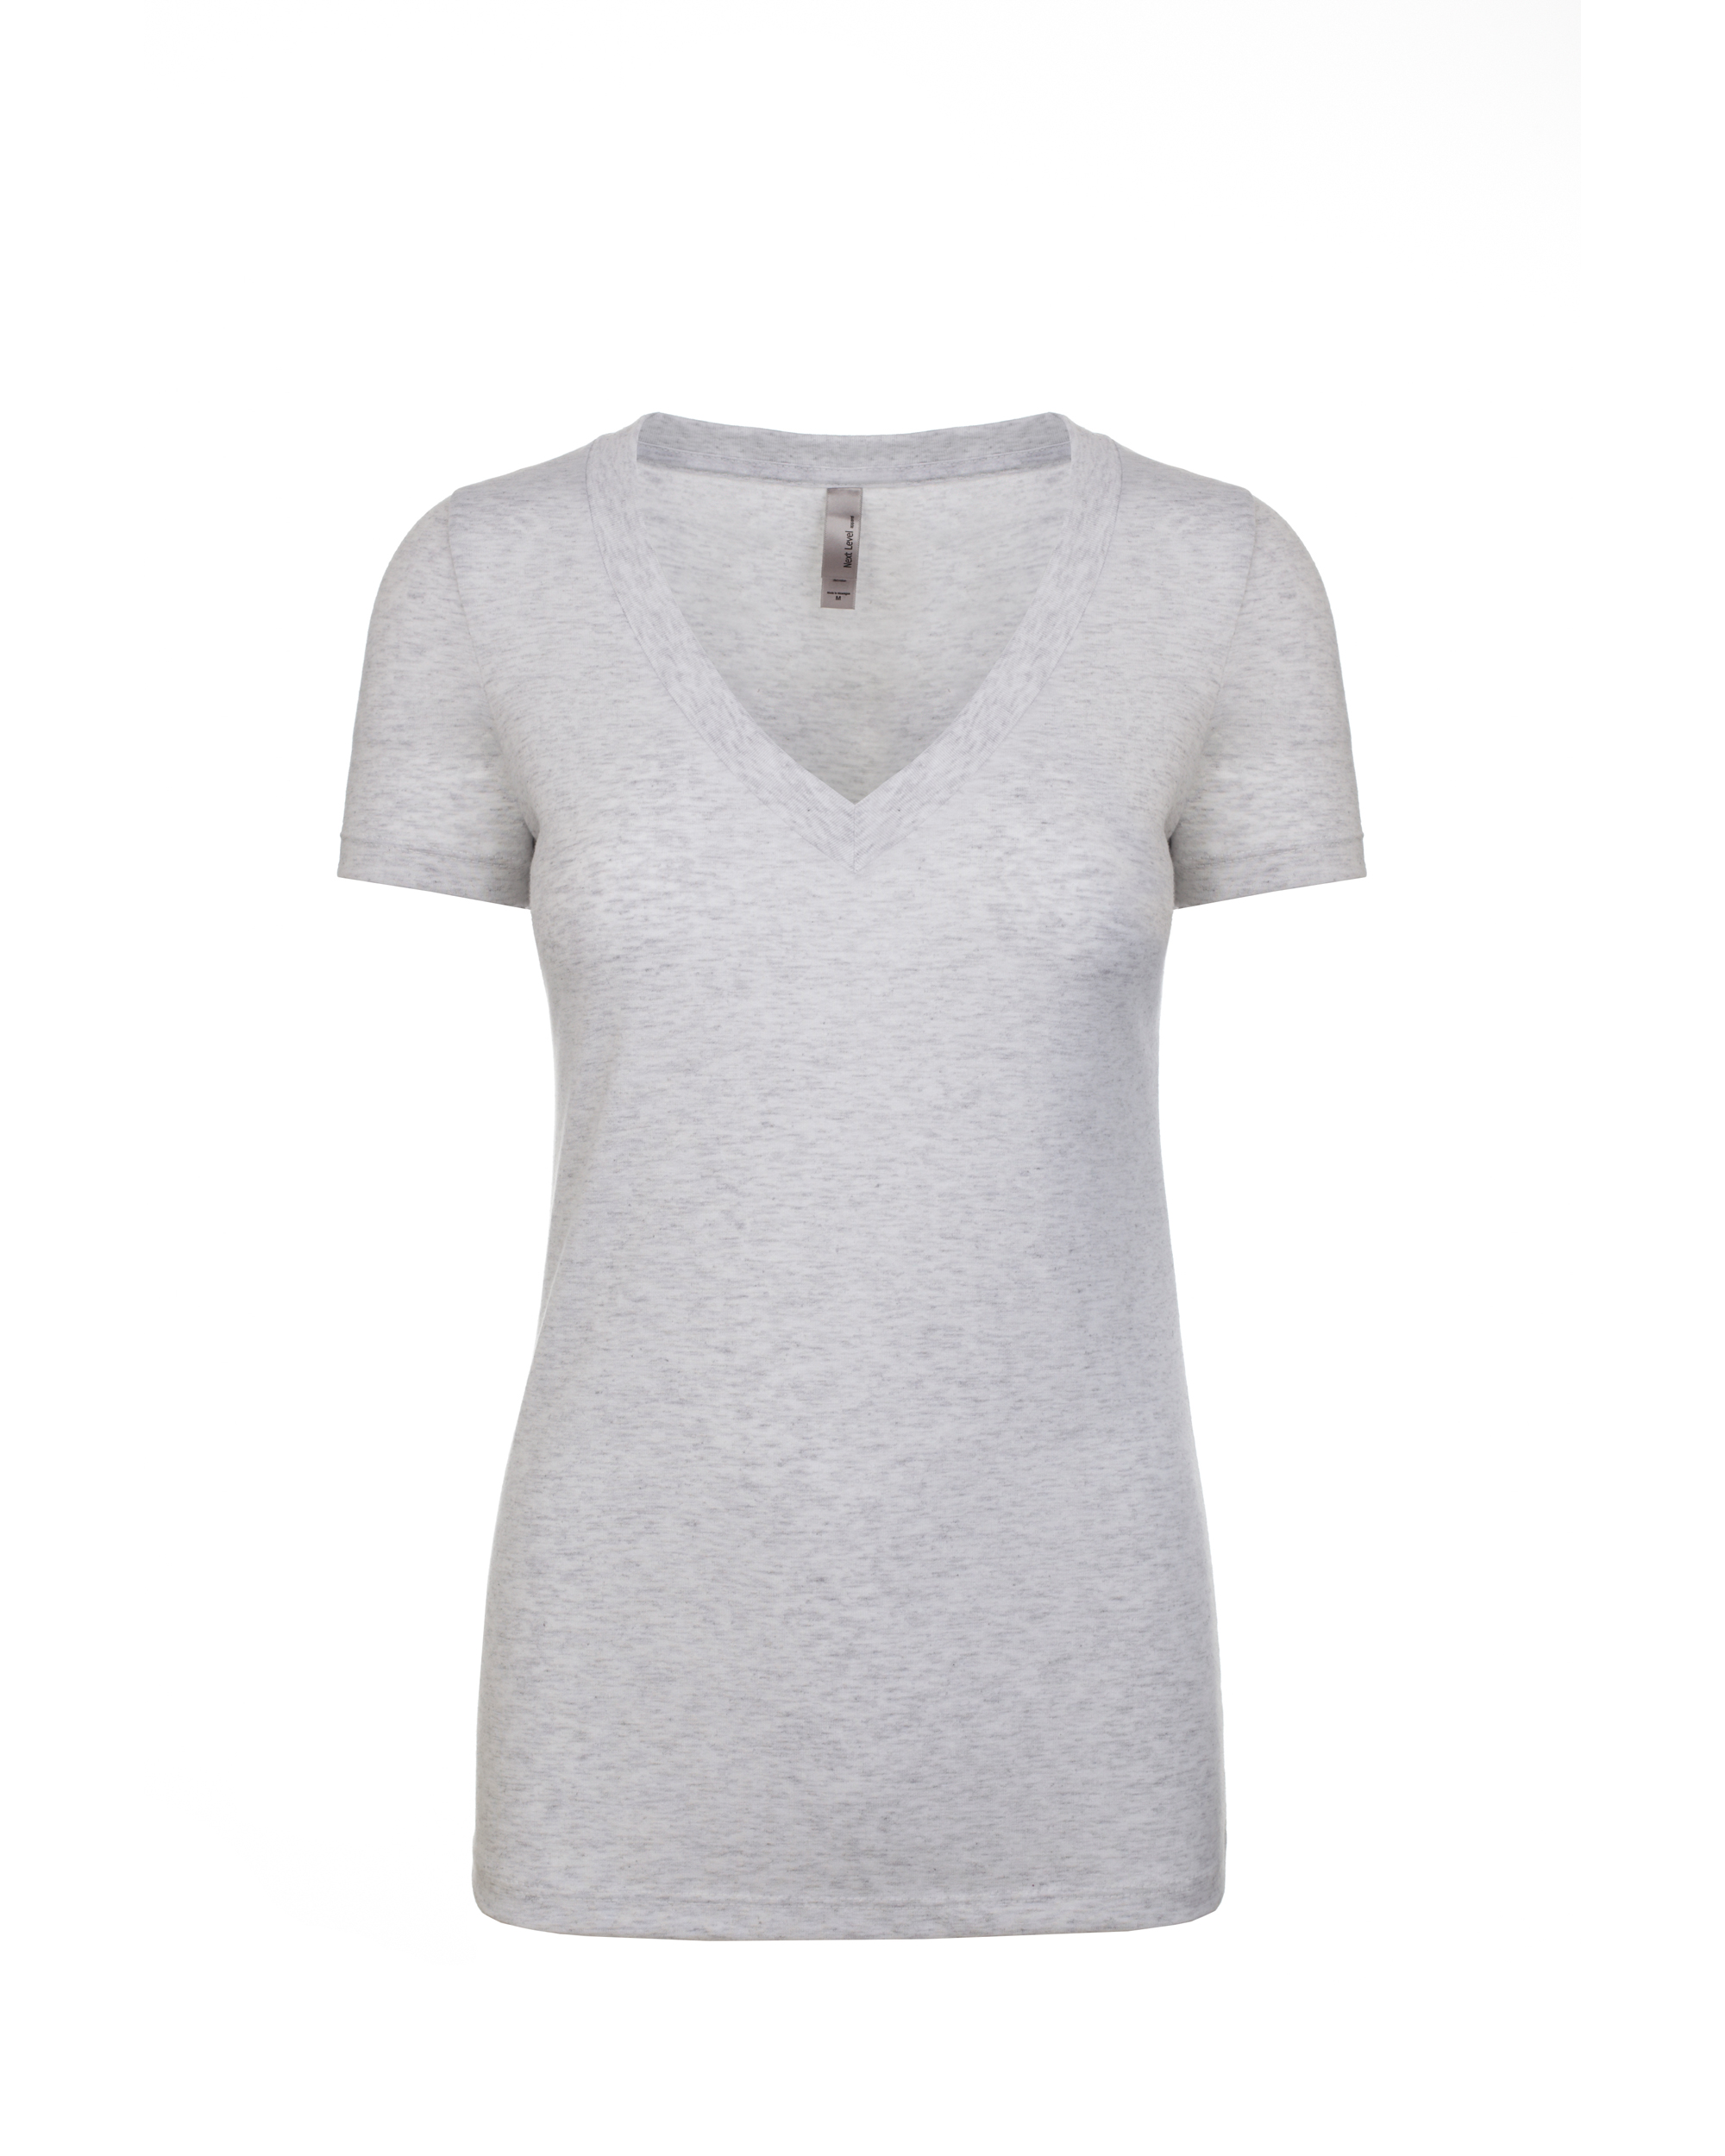 Next Level Apparel® 6740 Women's Tri-Blend Deep V-Neck T-Shirt